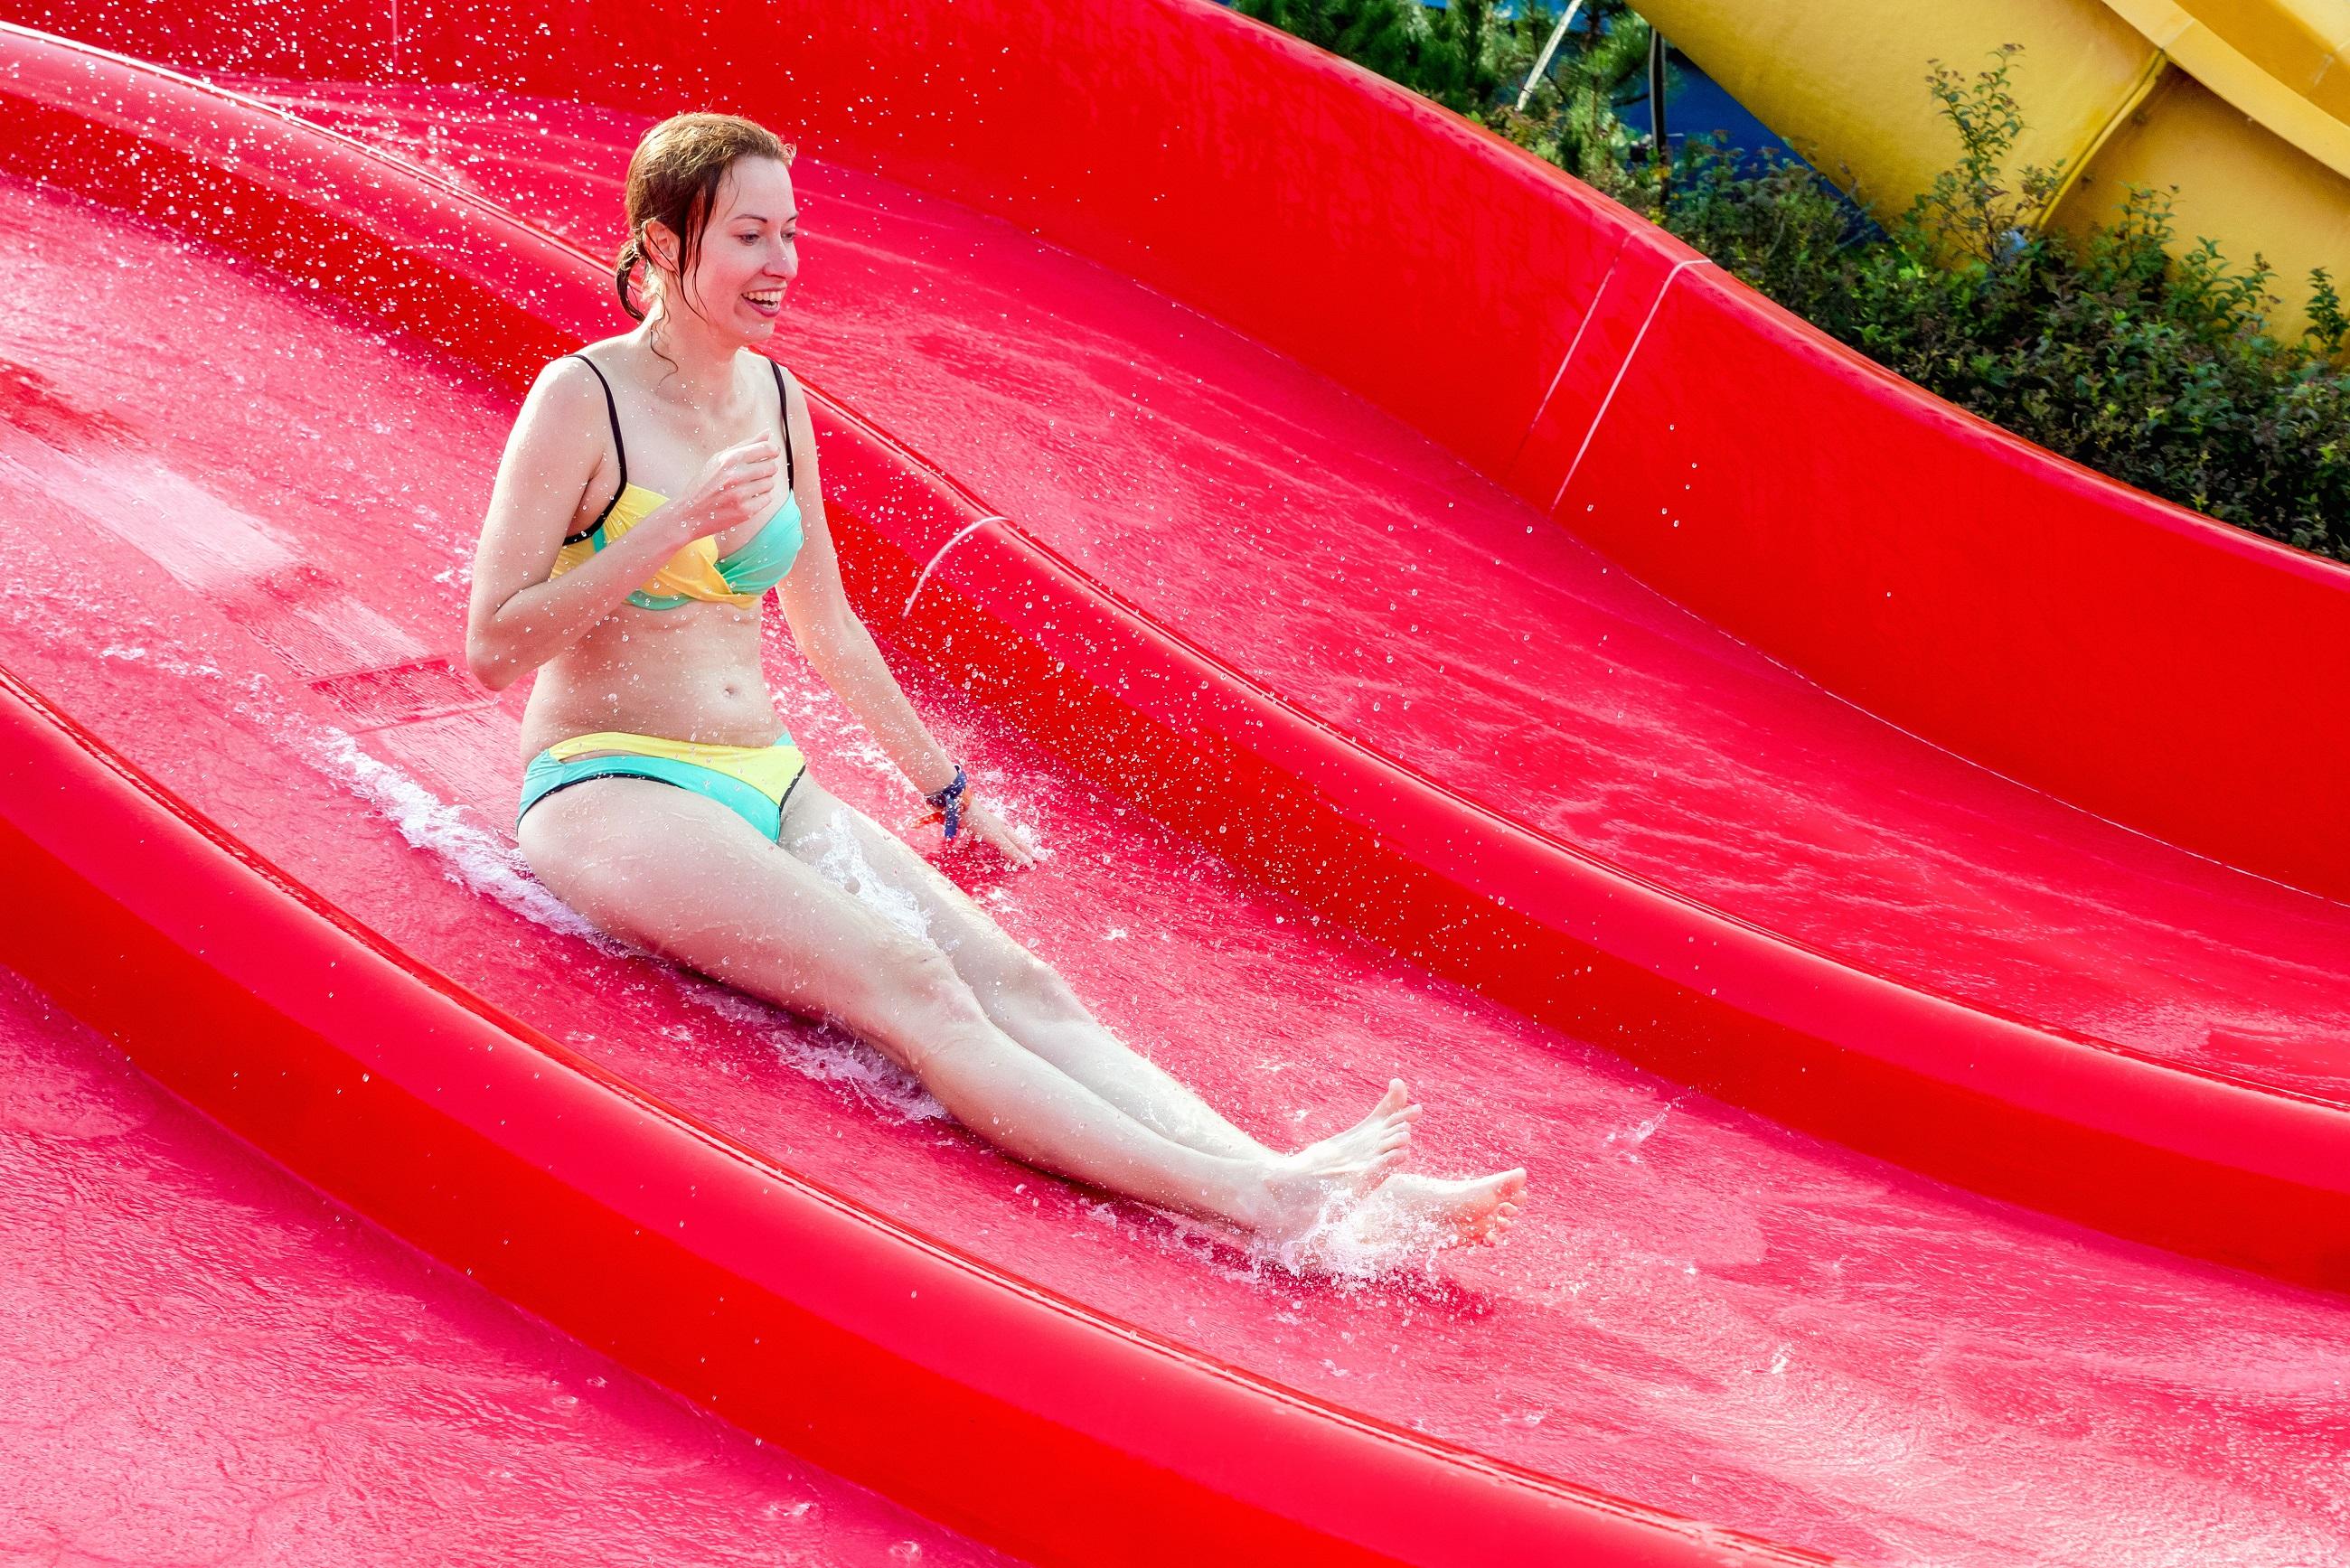 Frau im Bikini auf einer roten Wasserrutsche im Wasserpark